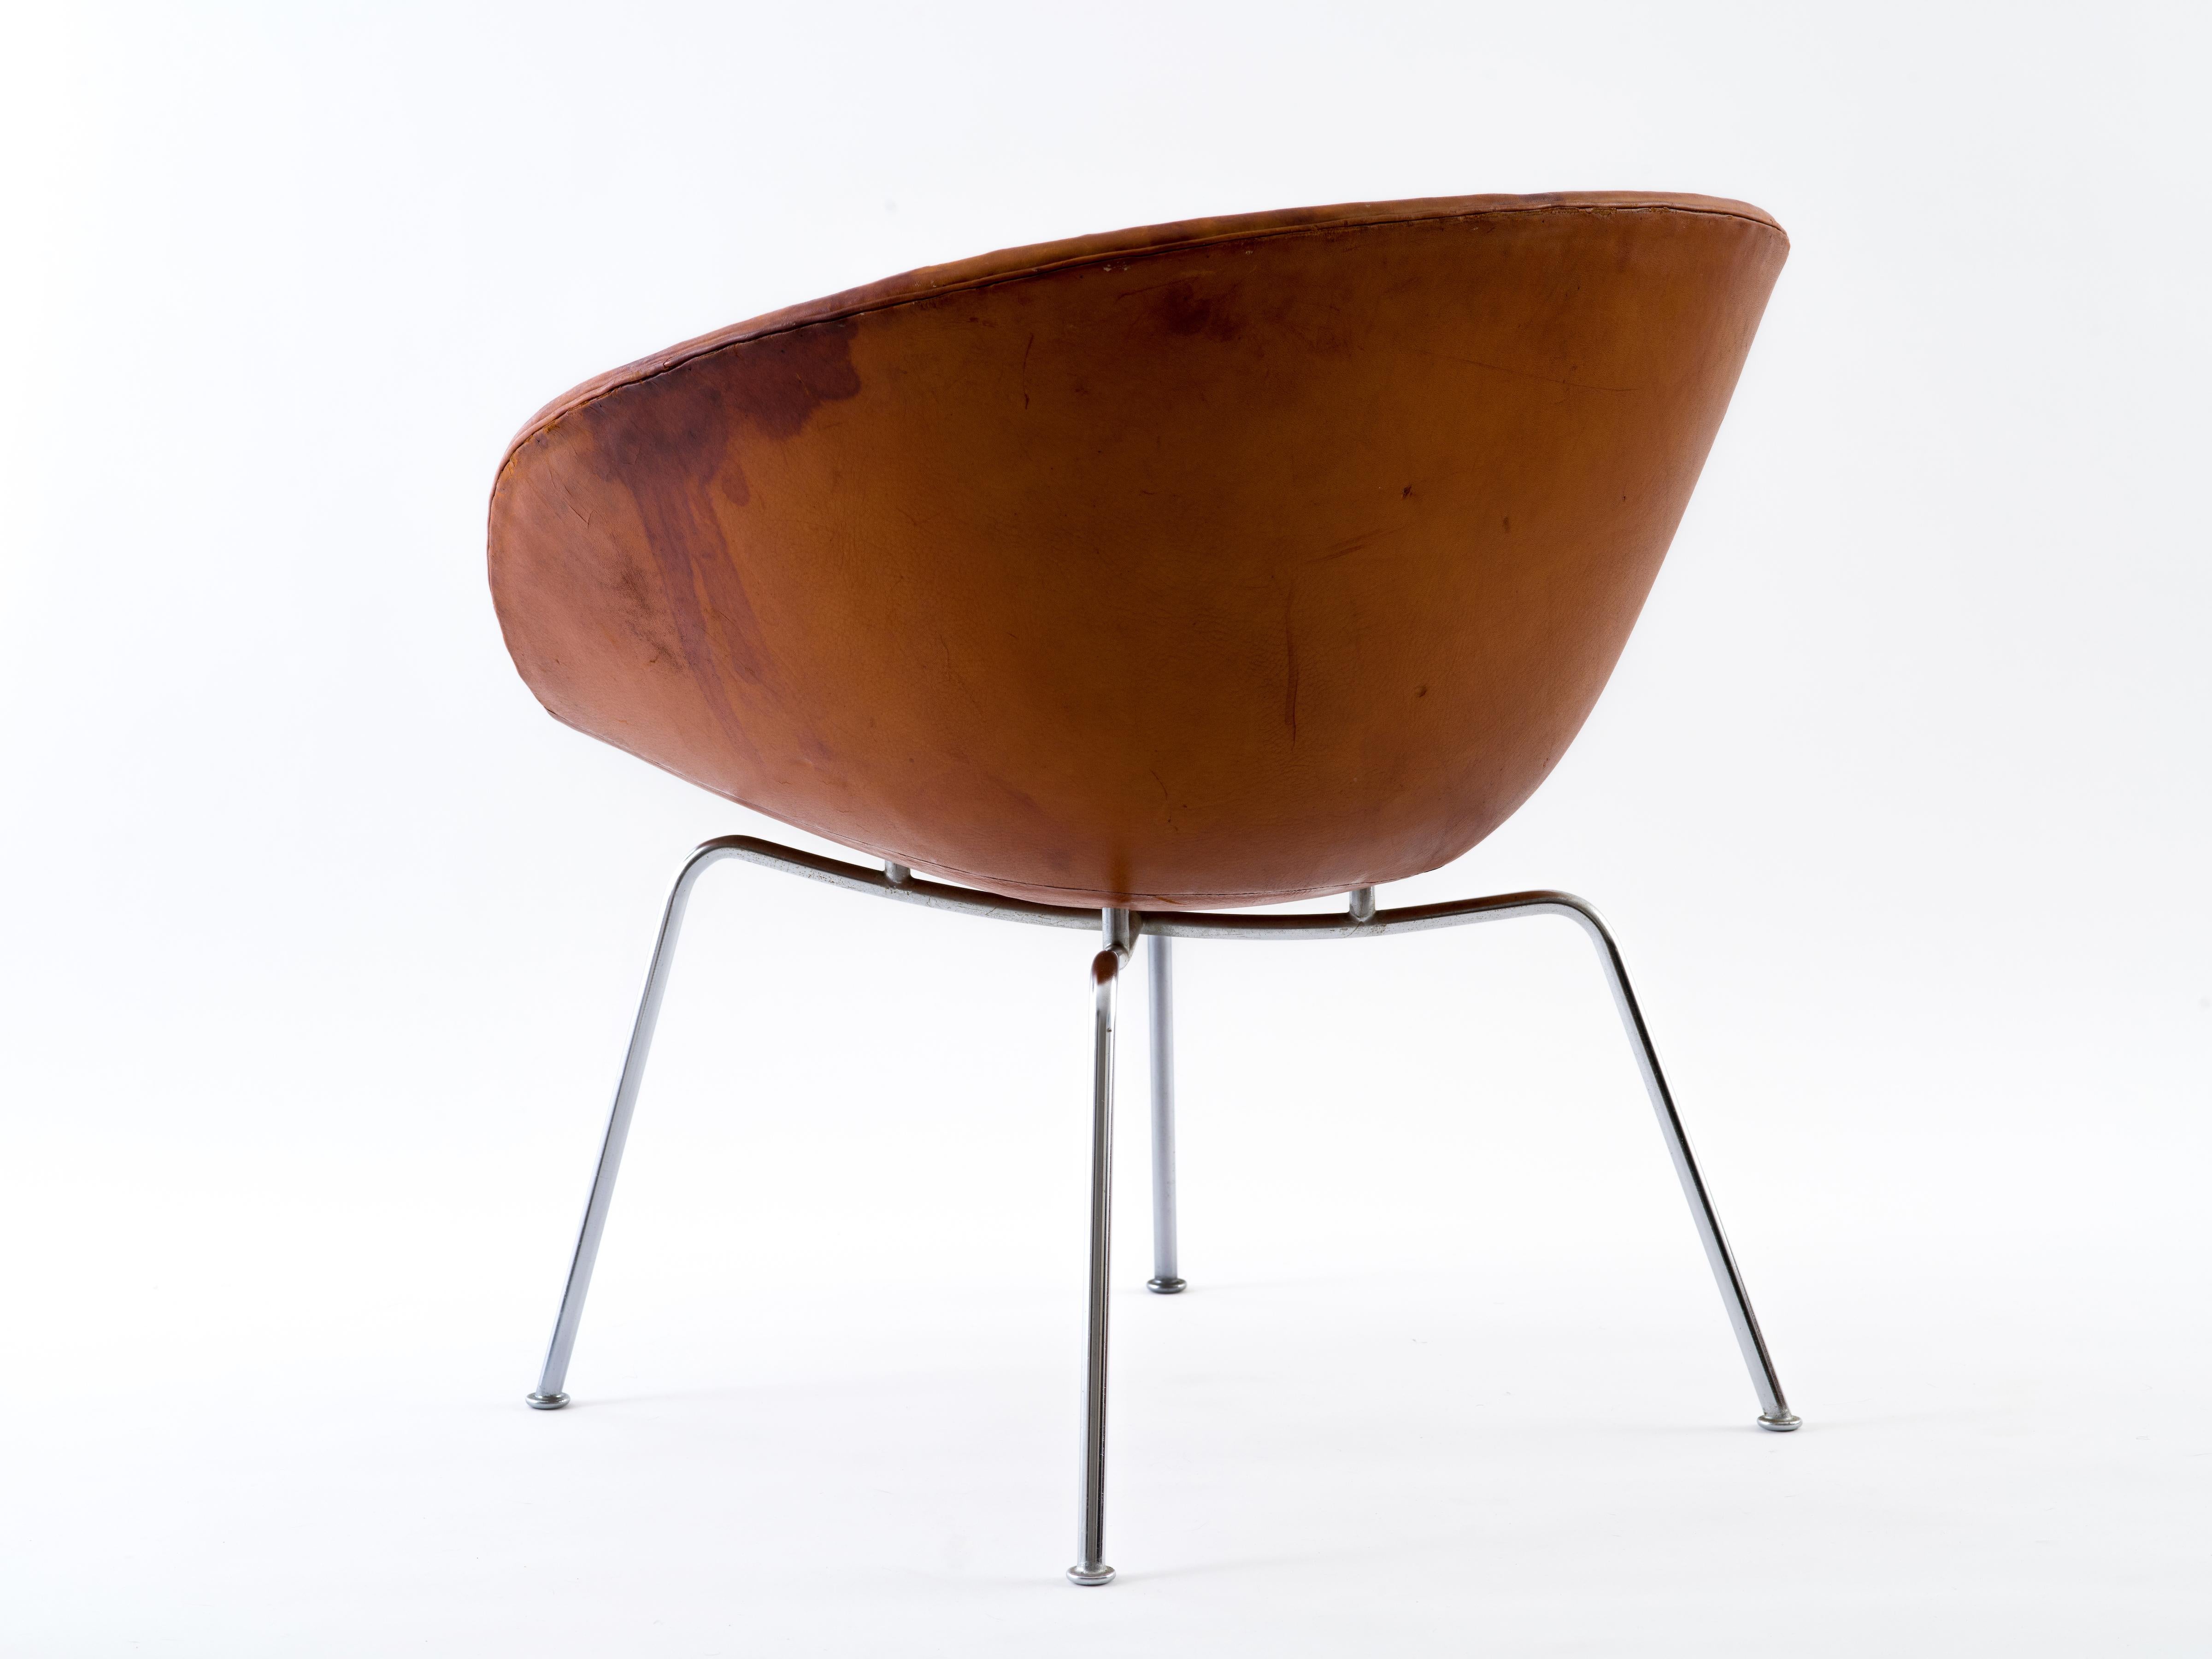 Danish Arne Jacobsen Pot Chair in Distressed Original Fritz Hansen Cognac Leather